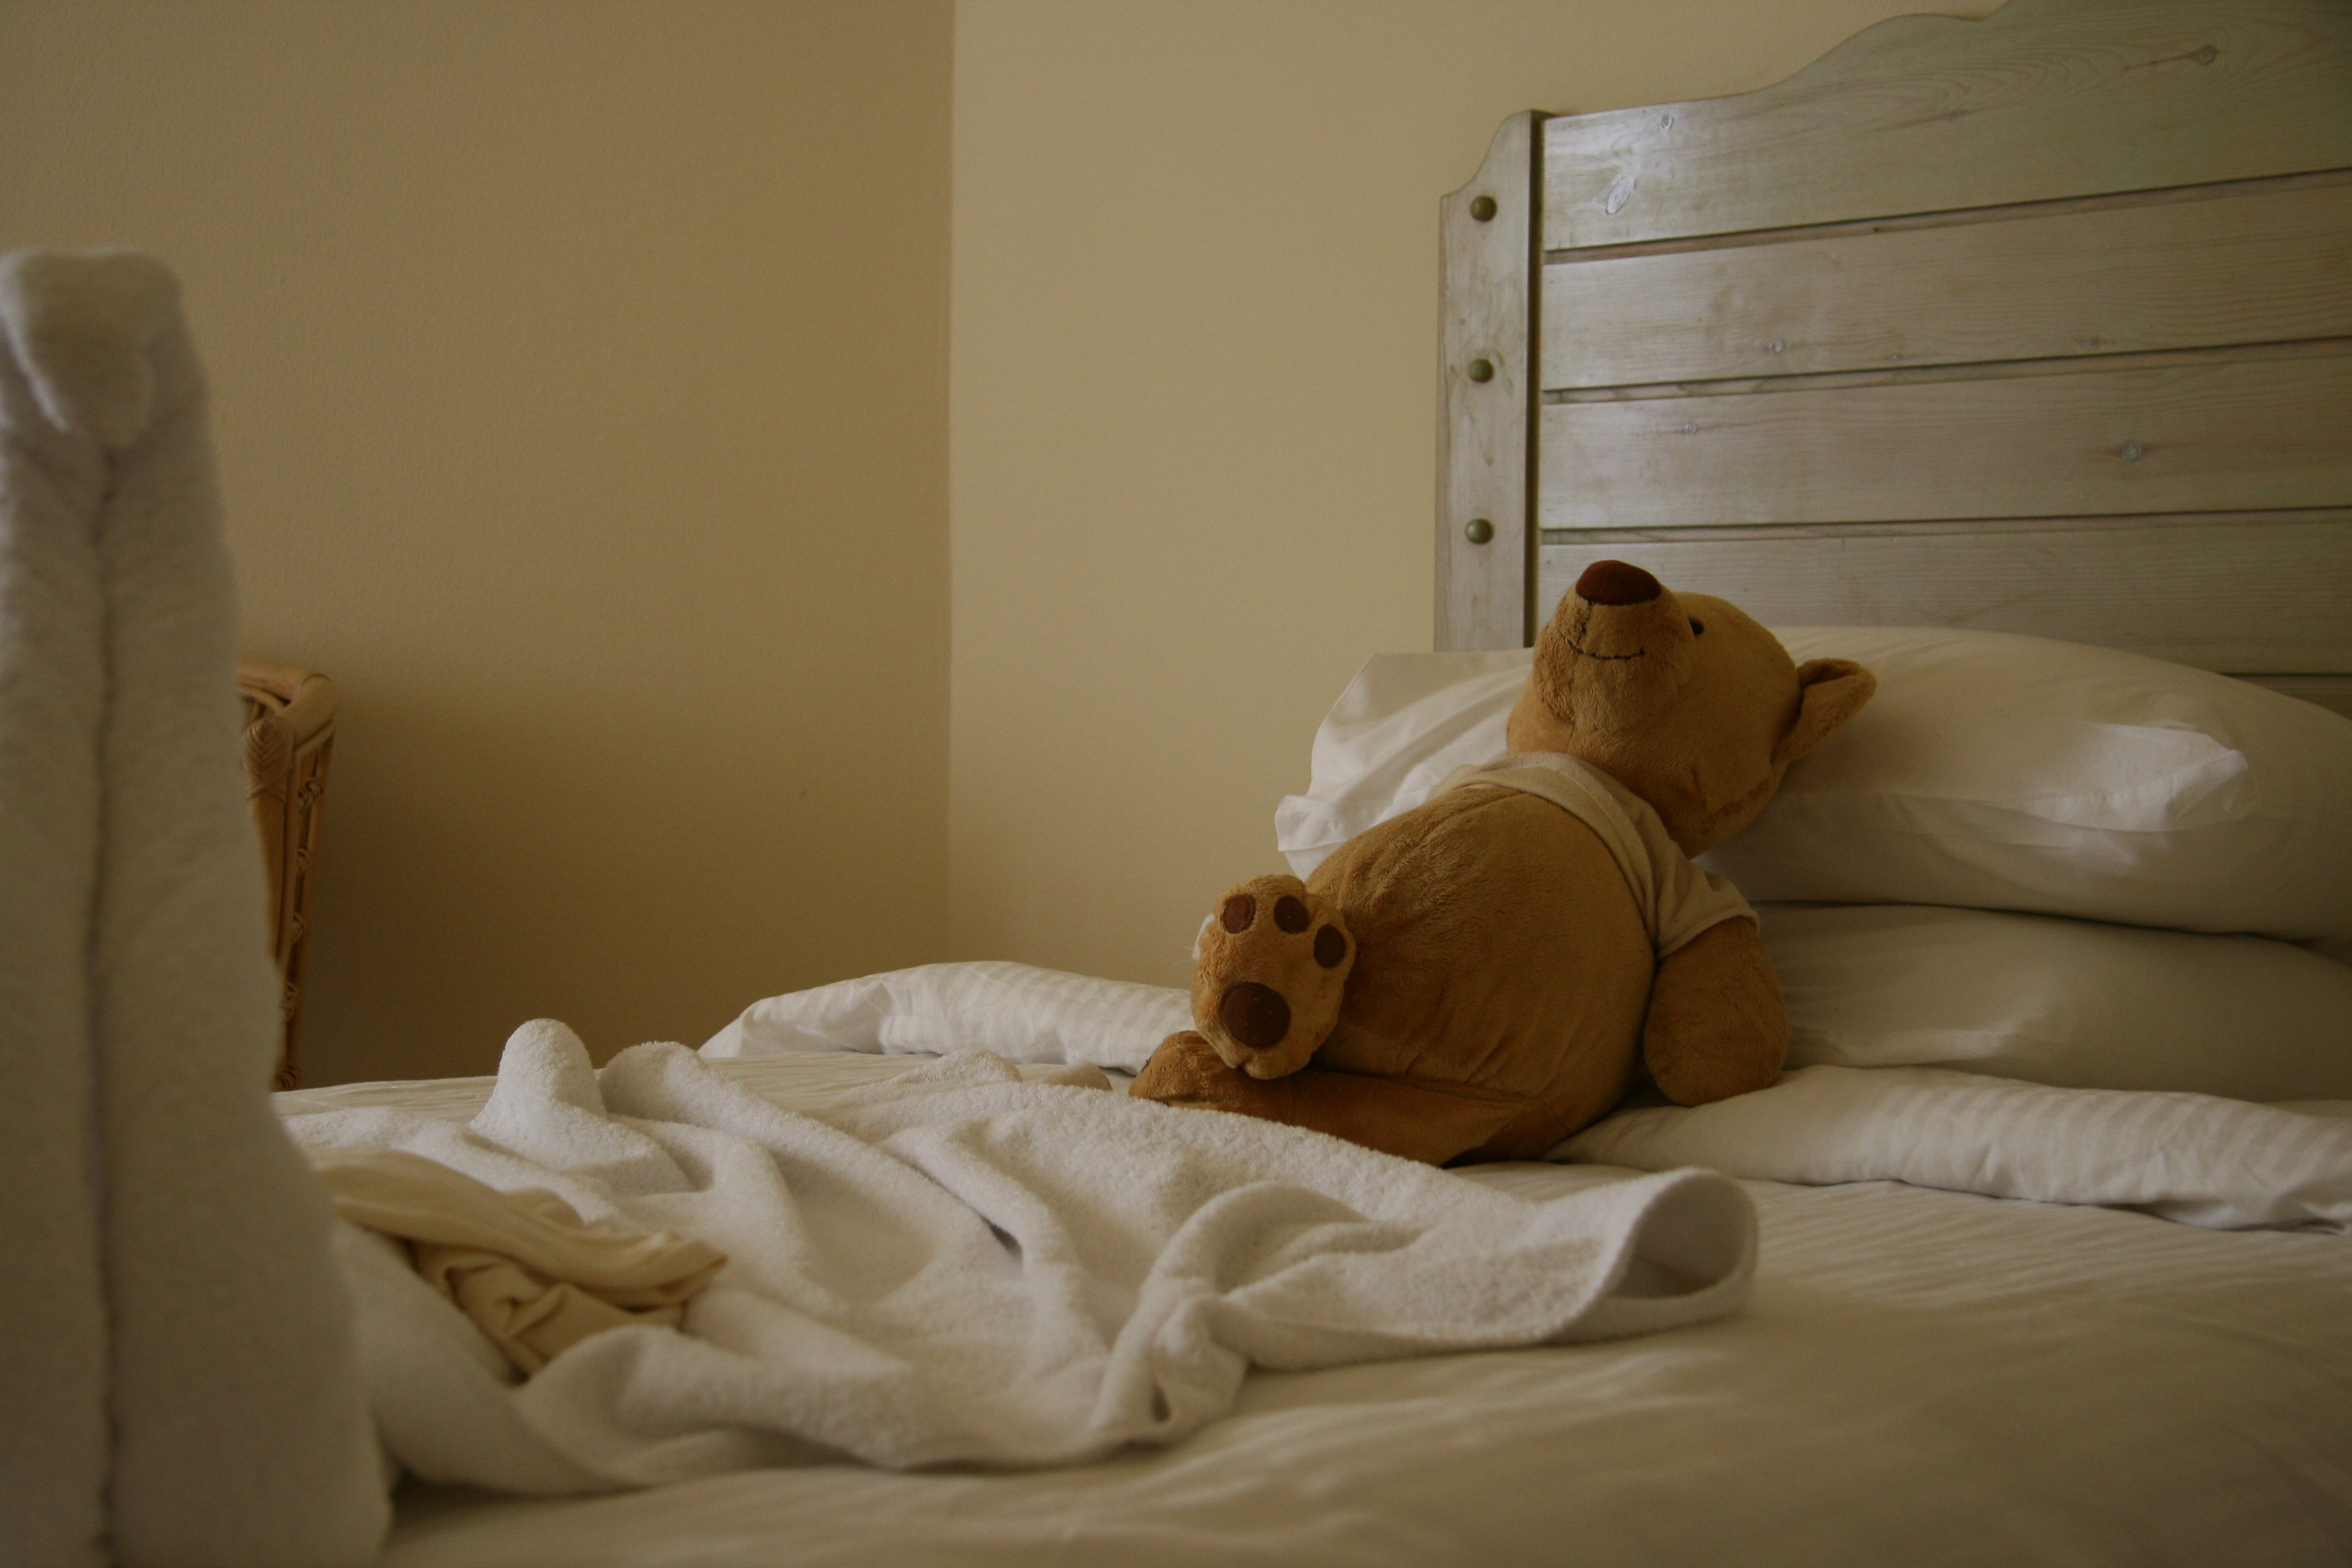 Сейчас идет спать. Медвежонок в постели. Кровать "мишки". Валяться в кровати.